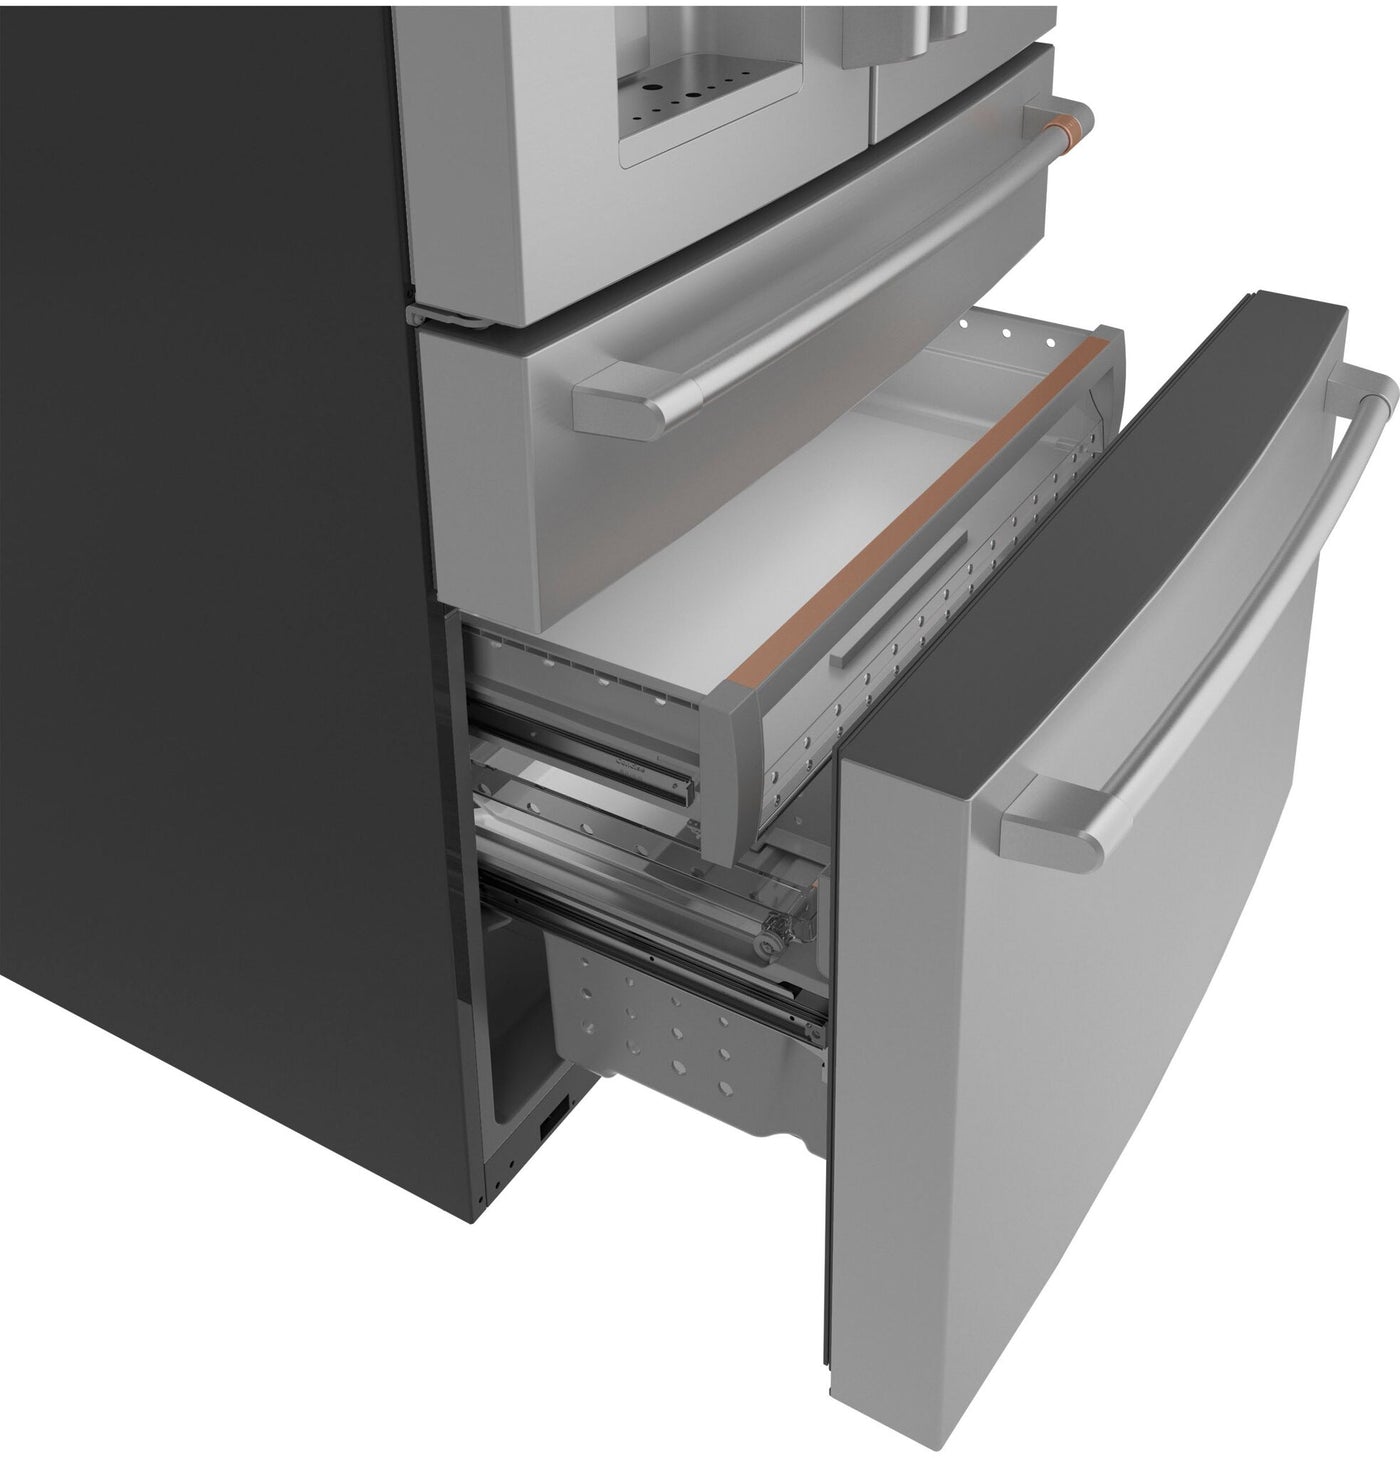 GE Café Stainless Steel Smart Counter-Depth 4-Door French-Door Refrigerator (22.3 Cu.Ft.) - CXE22DP2PS1